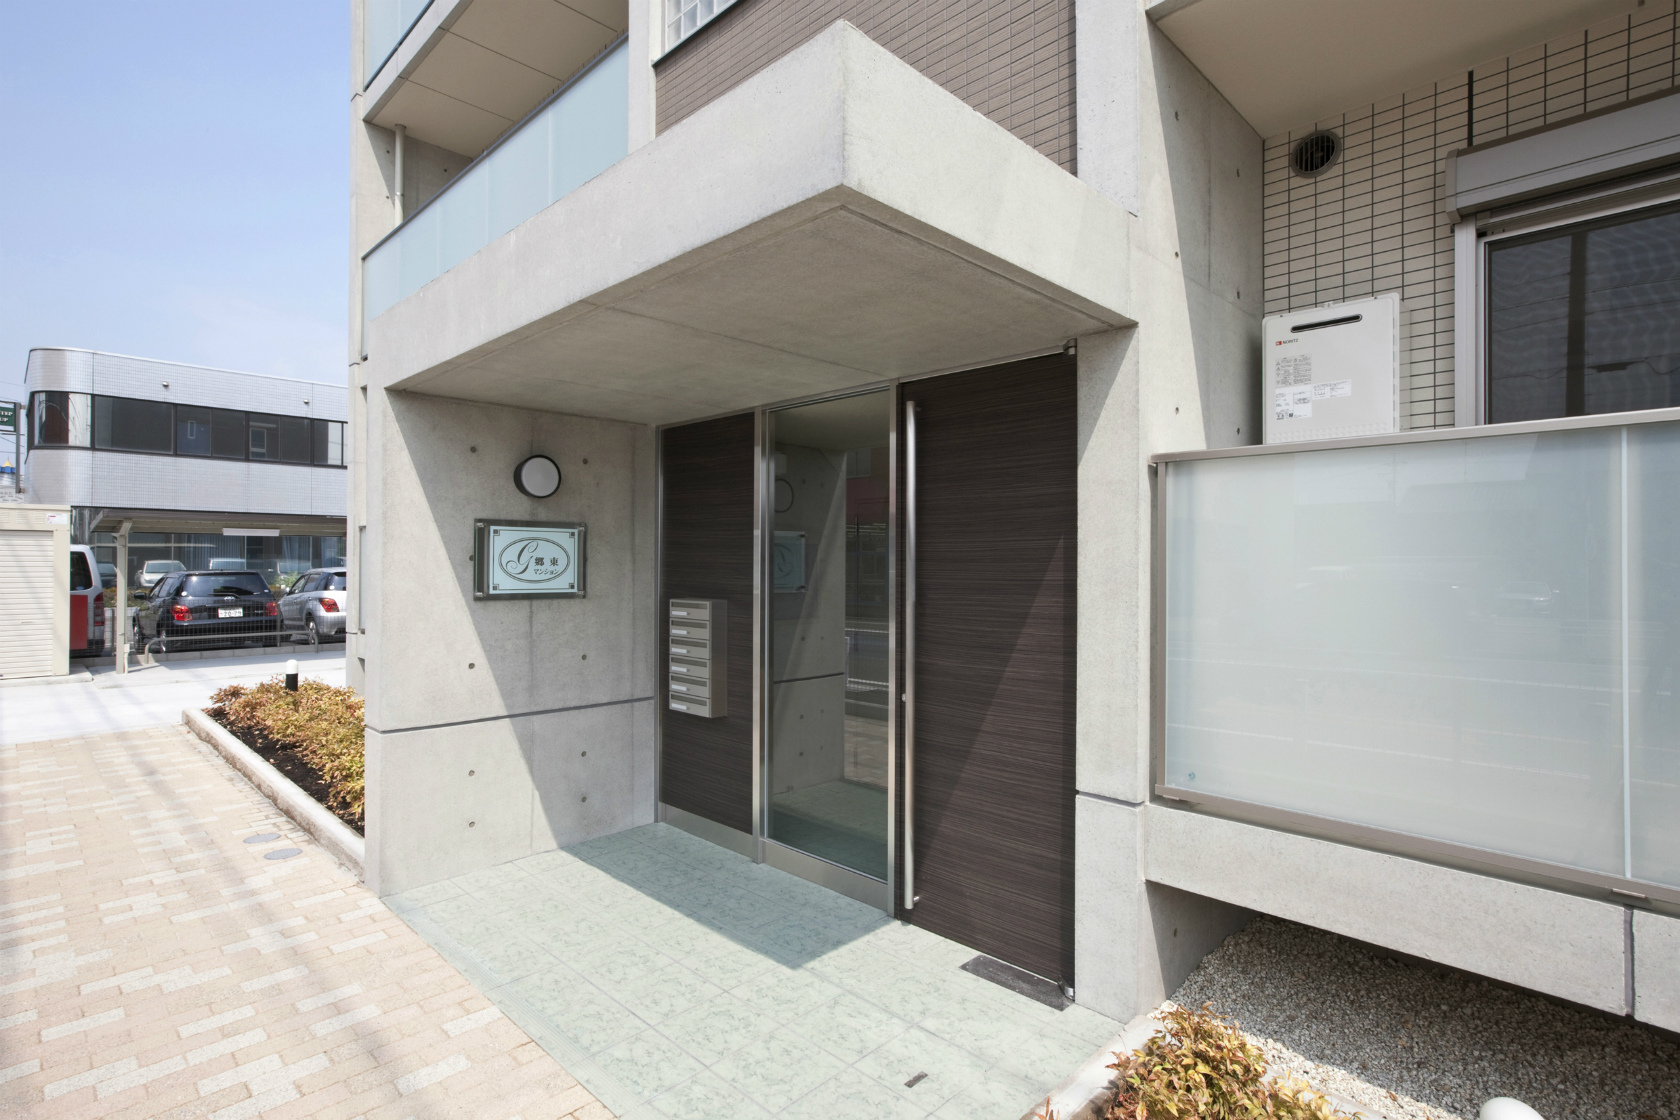 愛知県一宮市の全室角部屋の賃貸マンションのコンクリート打ちっぱなしの素材感を生かしたエントランスデザイン